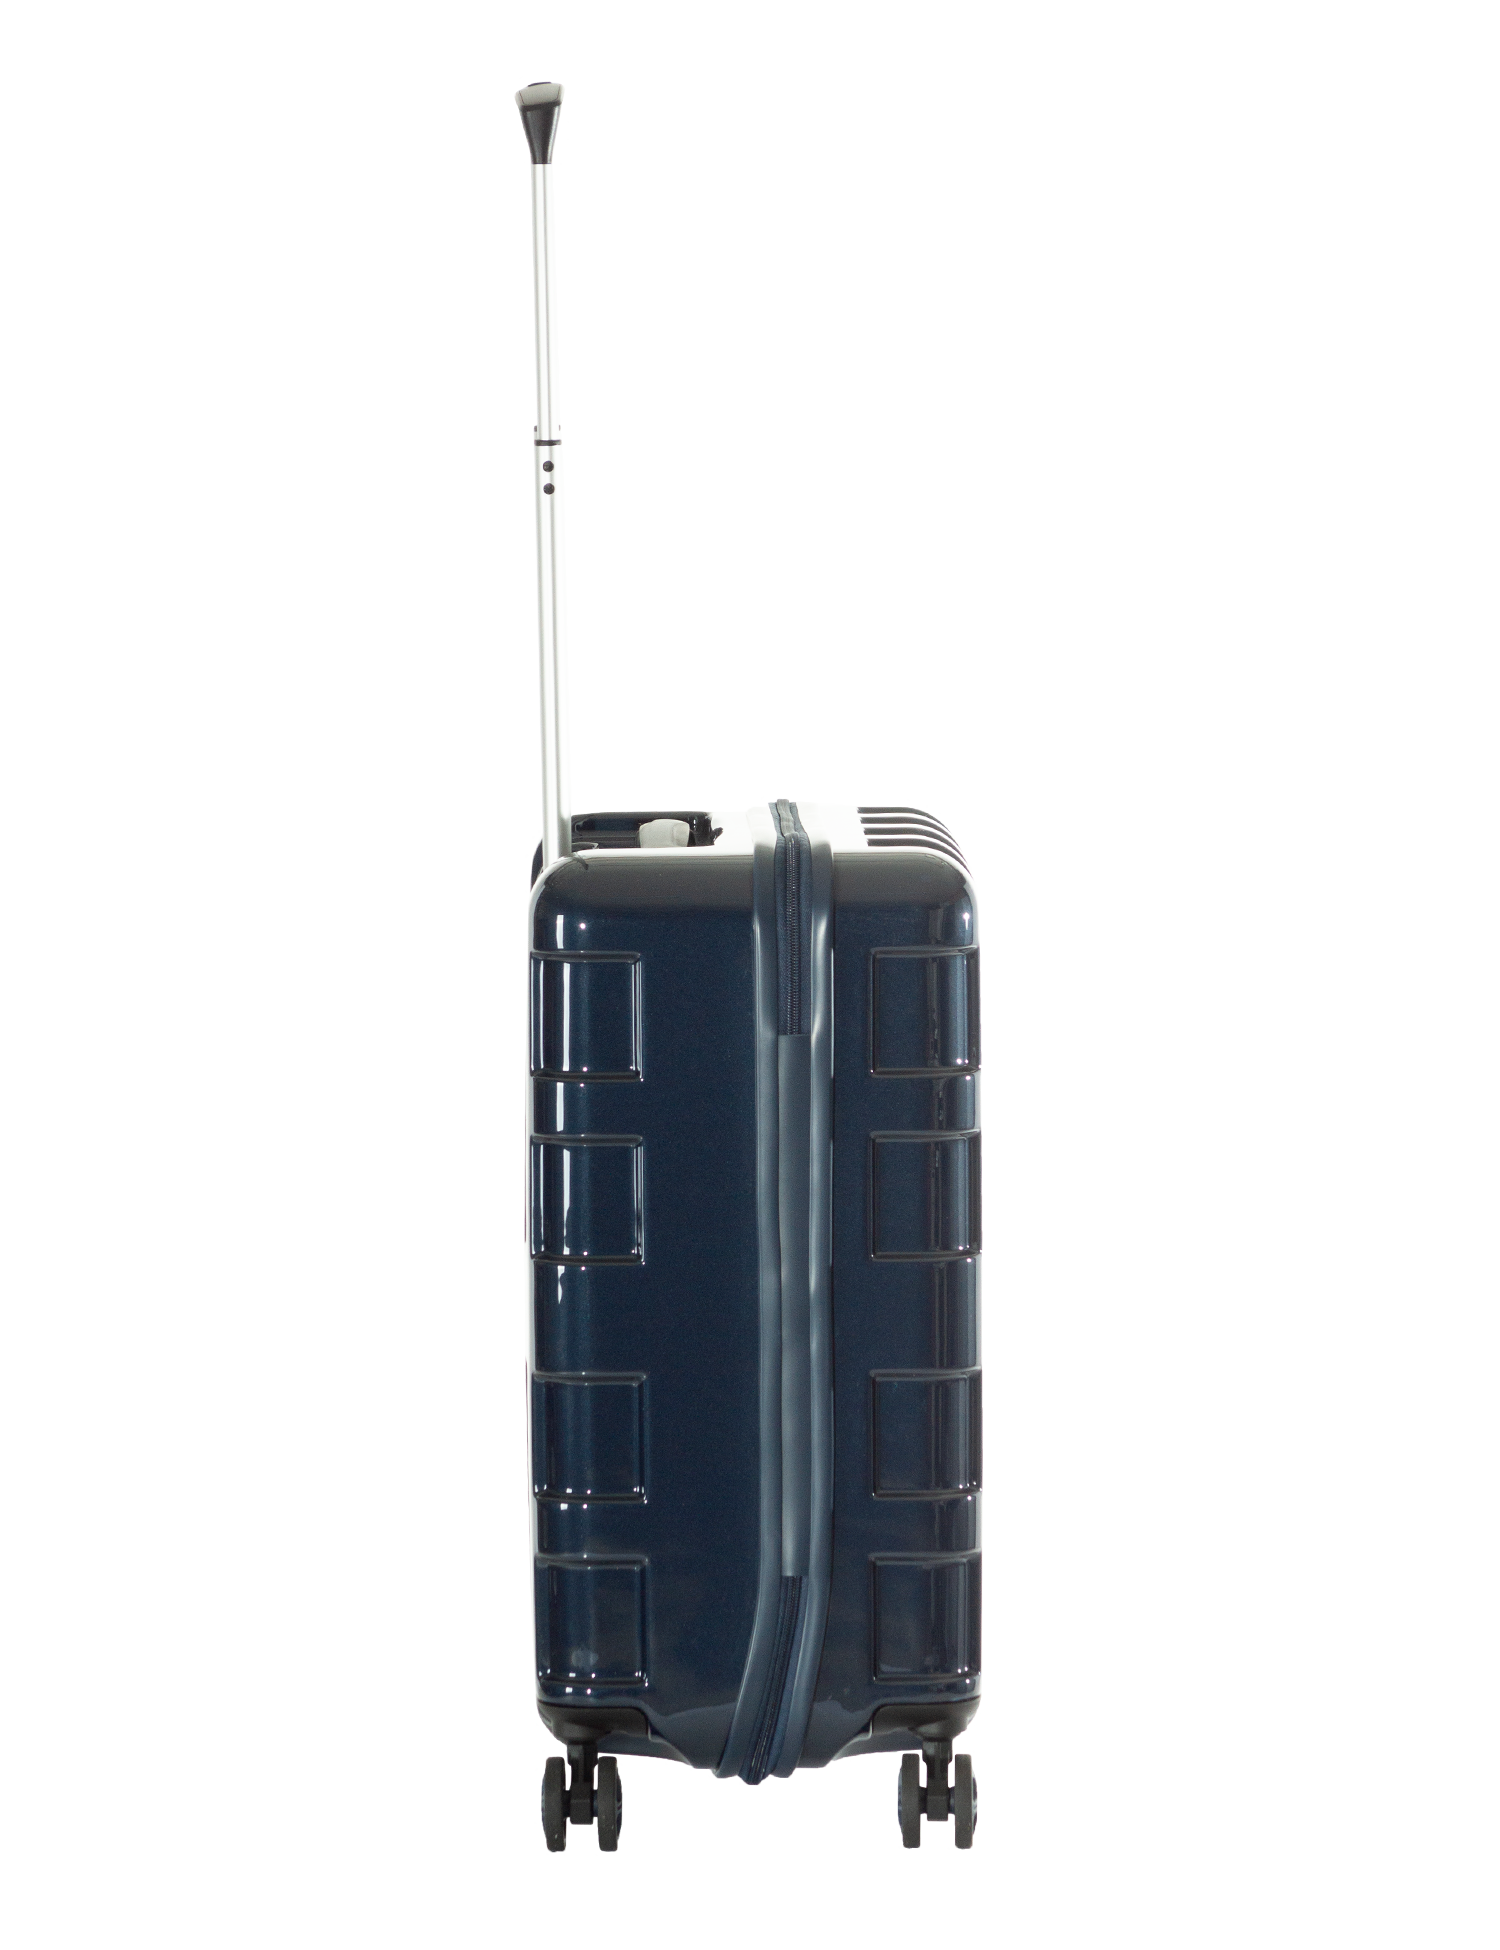 アジアラゲージのスーツケース Maxbox Ali 2511 アジア ラゲージ 公式サイト Asia Luggage